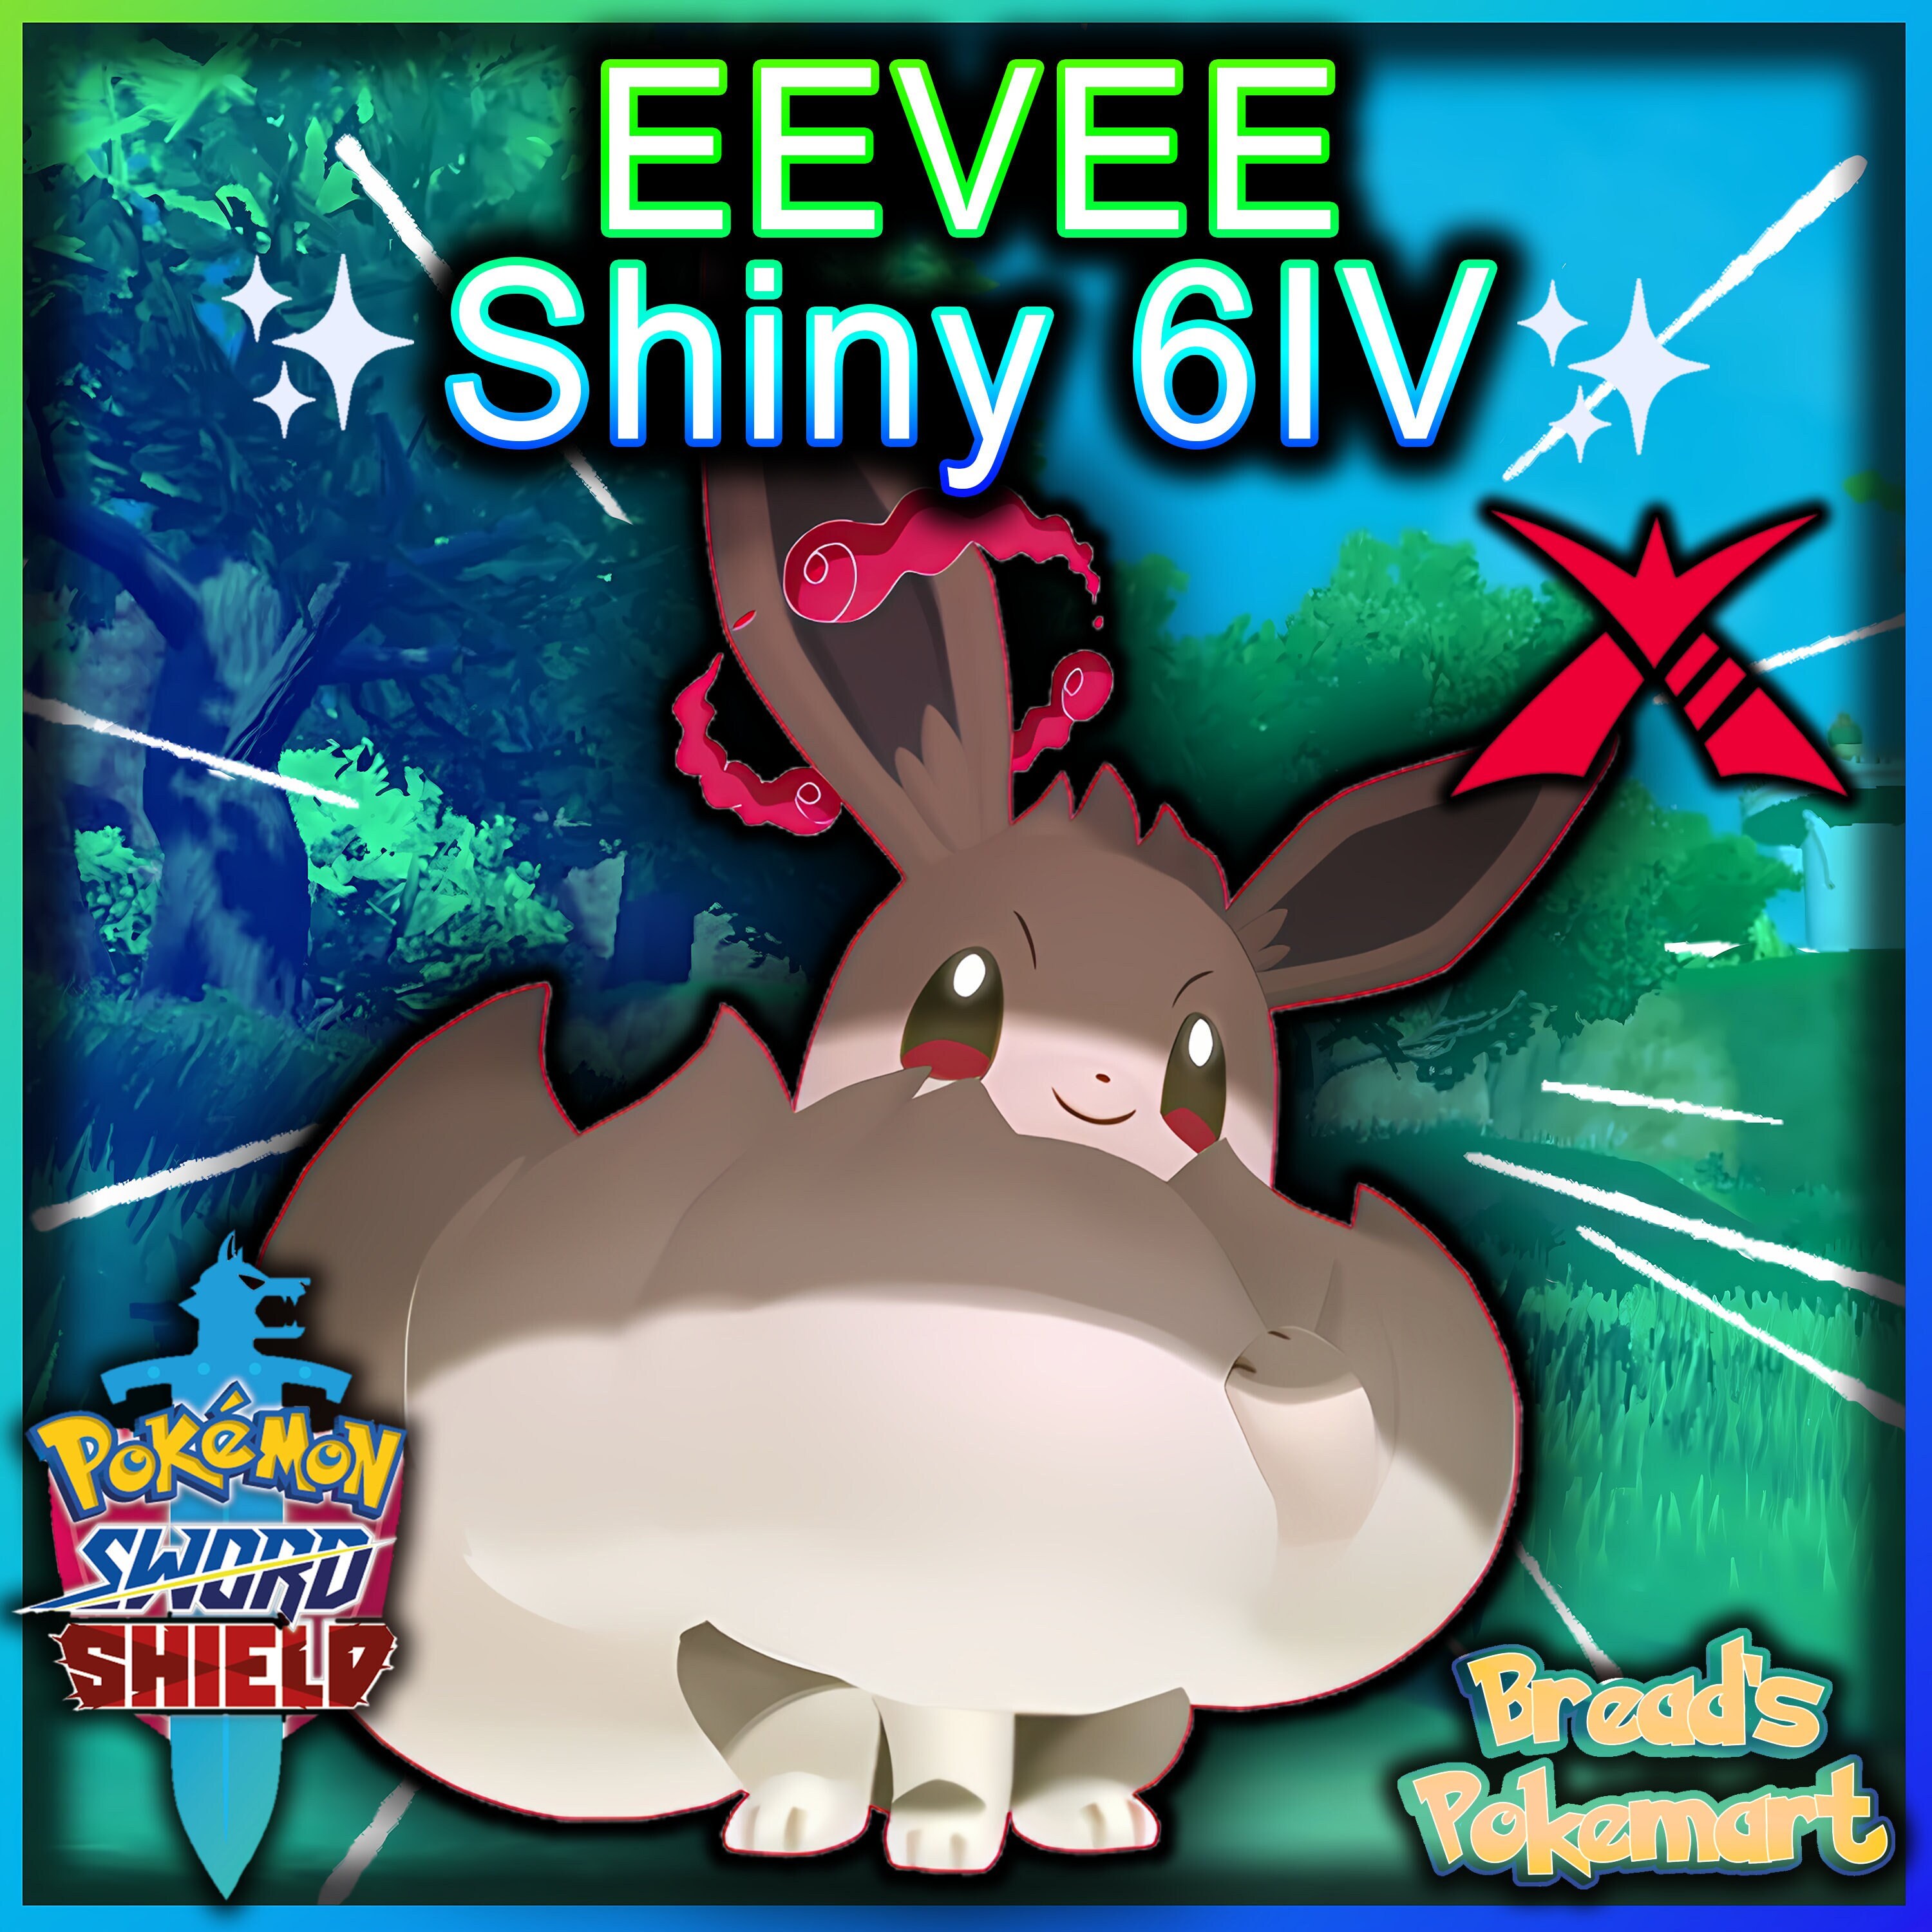 6IV Ultra Shiny Zekrom, Kyurem & Reshiram Bundle Pokemon Sword / Shield